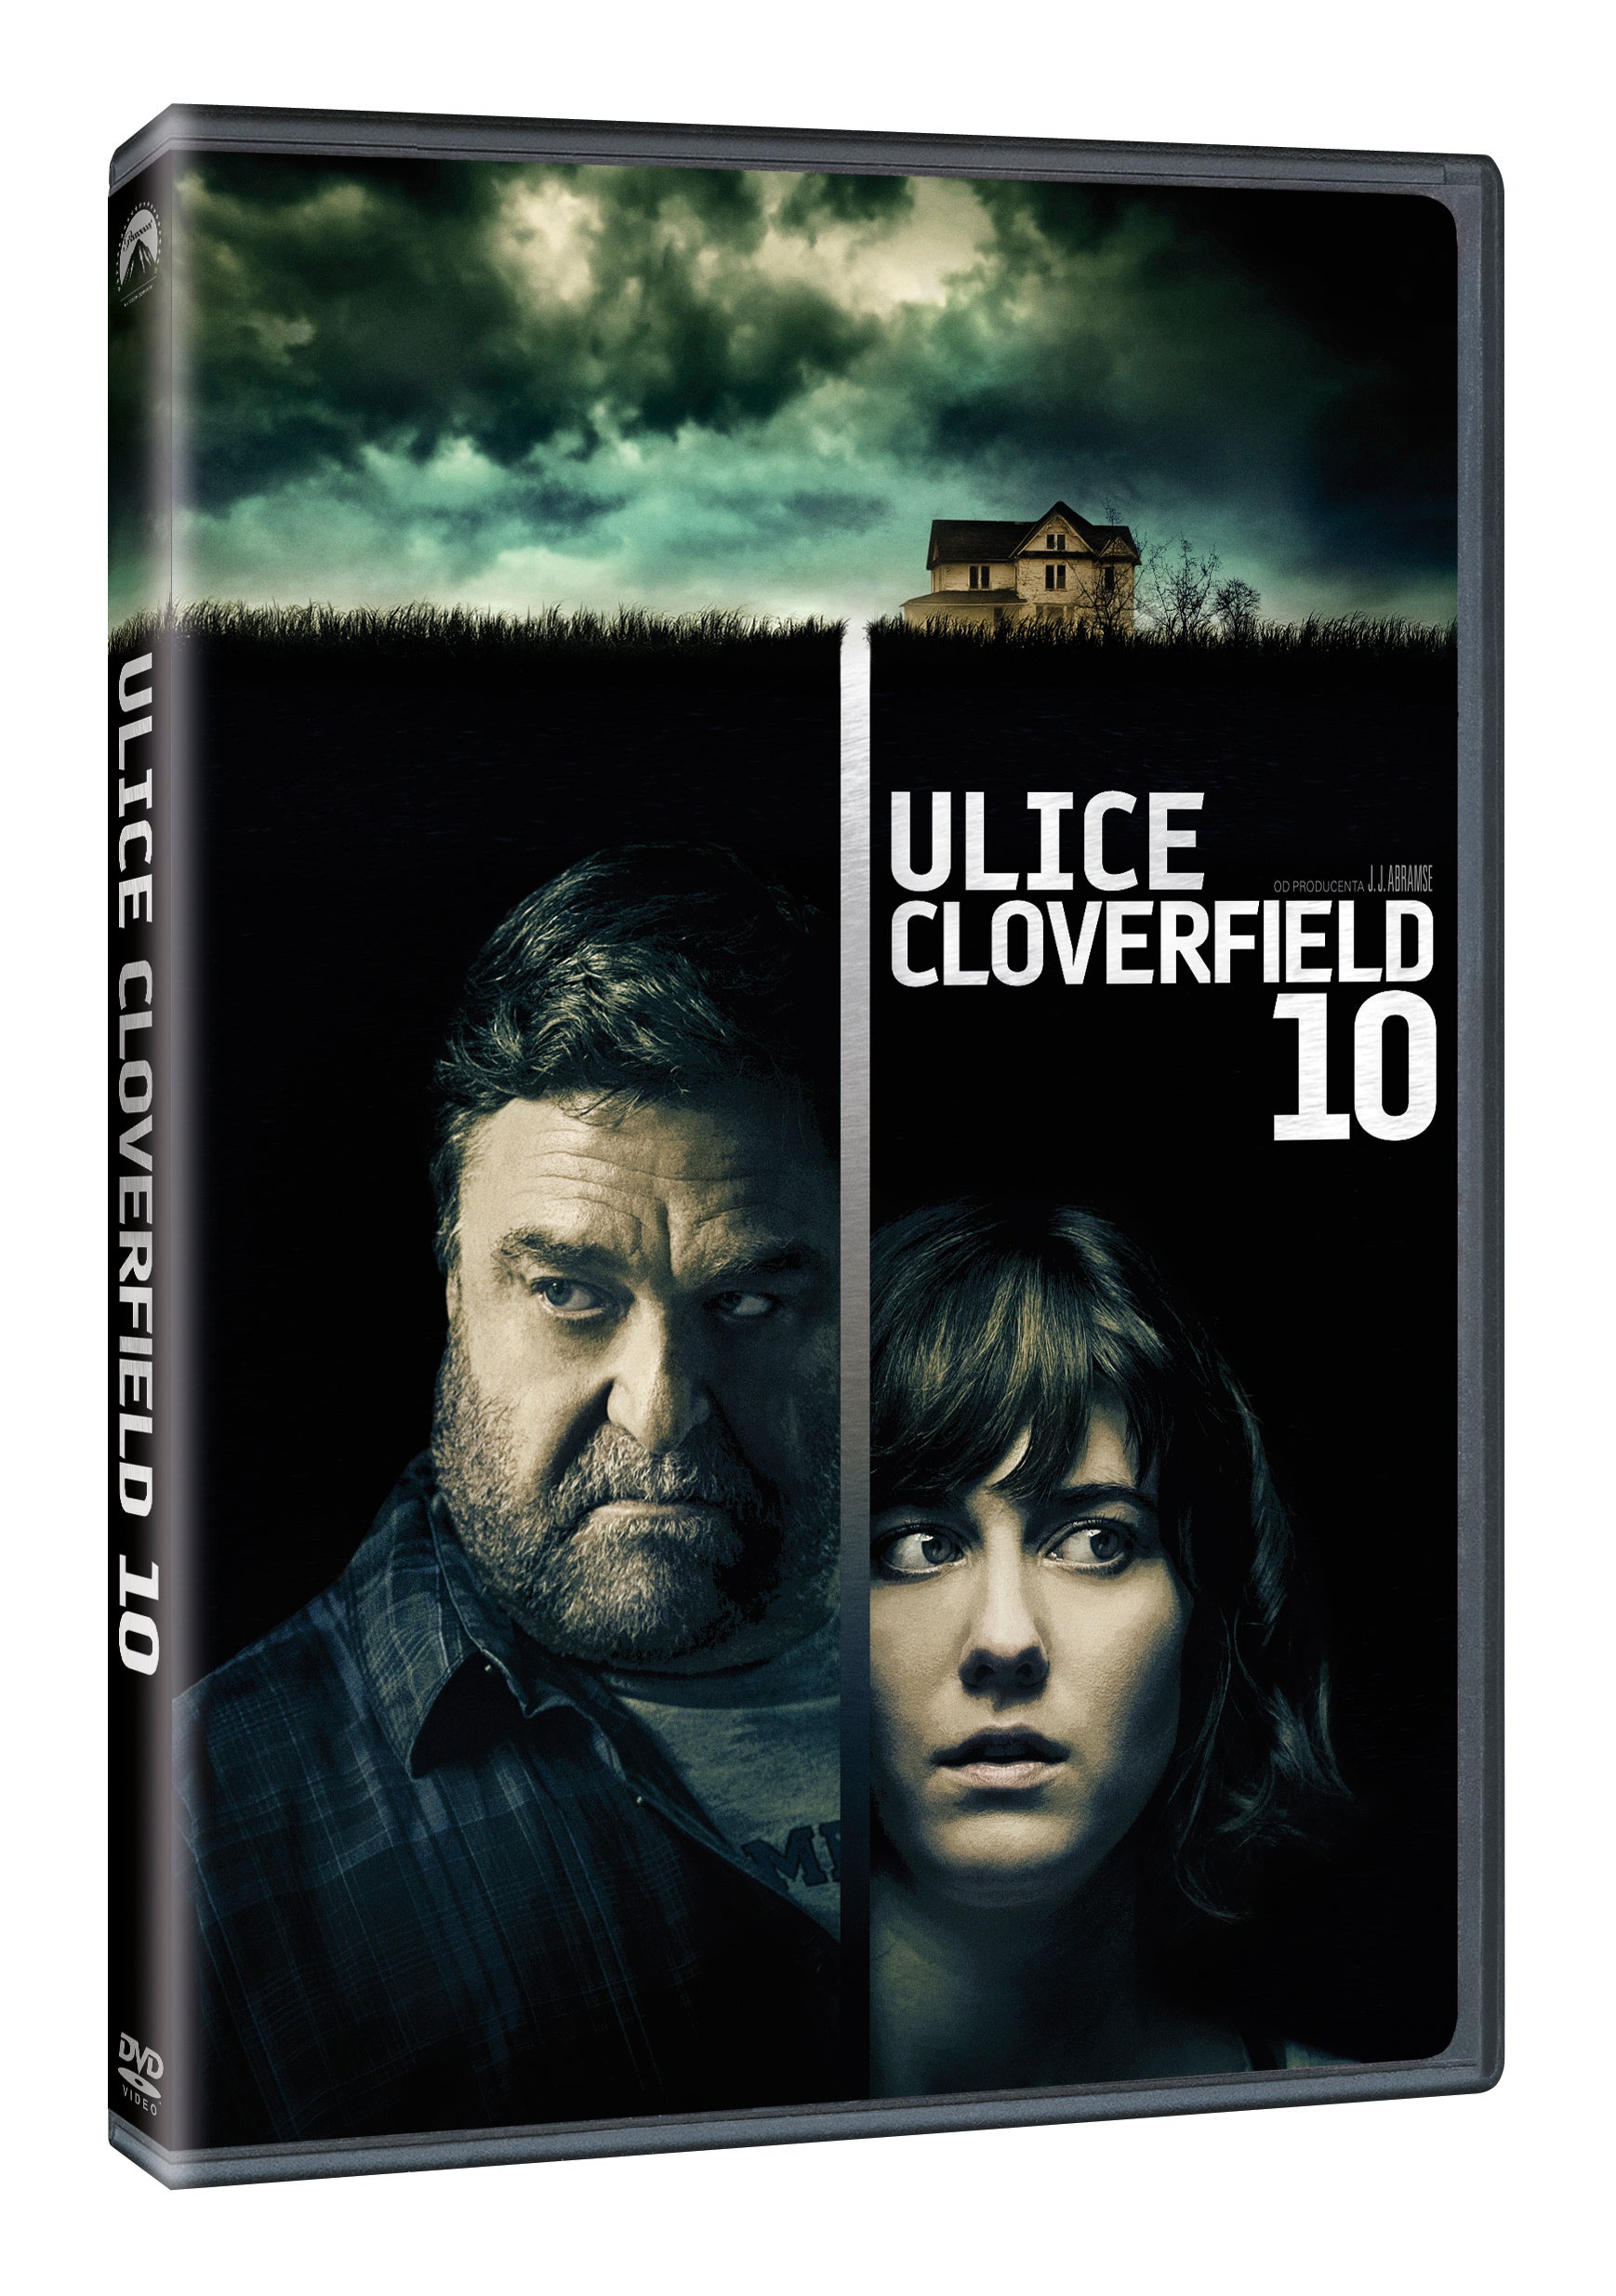 Ulice Cloverfield 10 DVD / 10 Cloverfield Lane